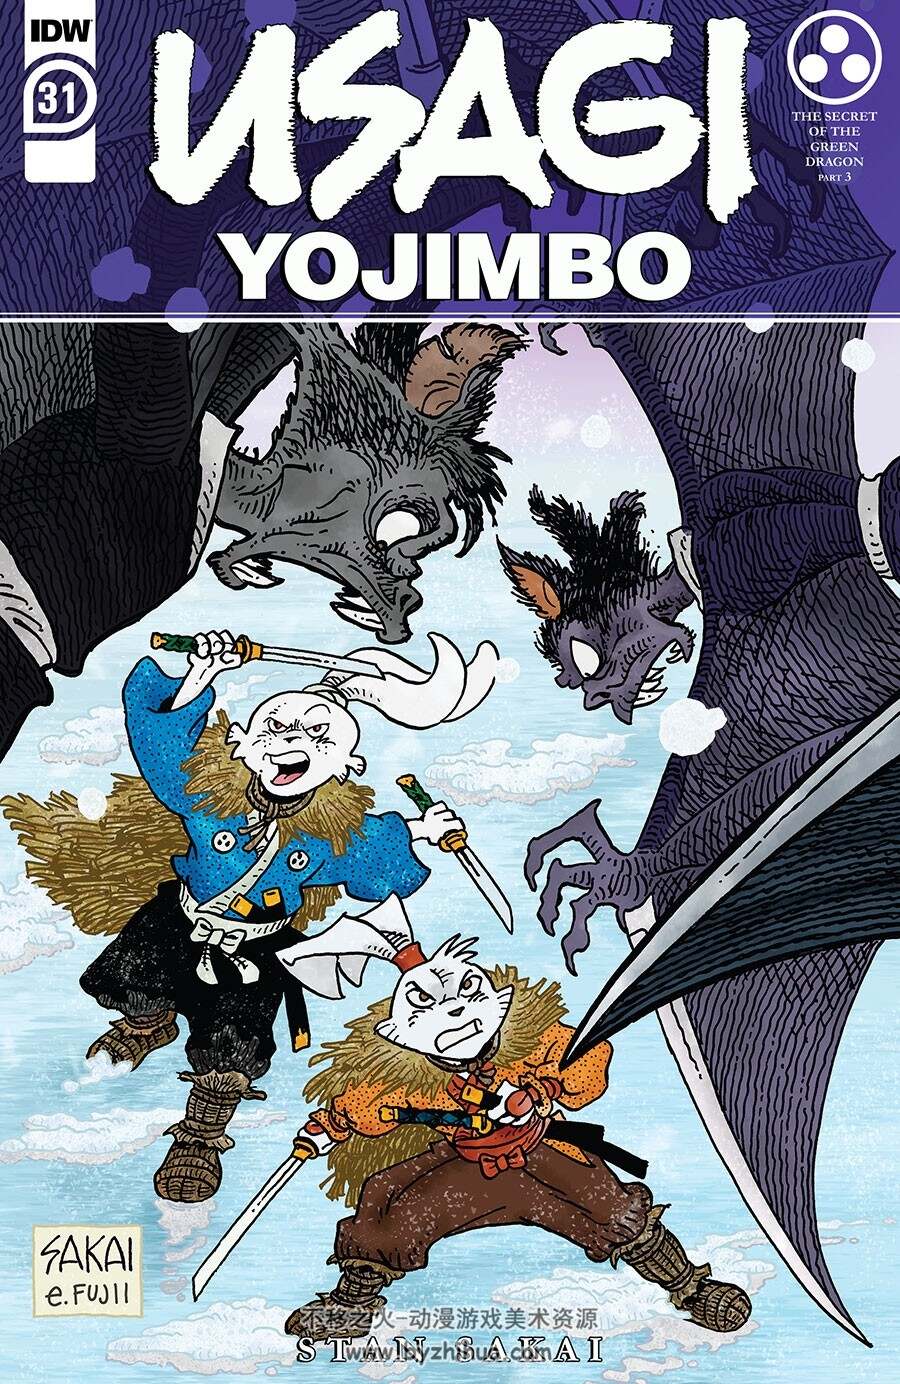 Usagi Yojimbo 第031册 2022 漫画 百度网盘下载